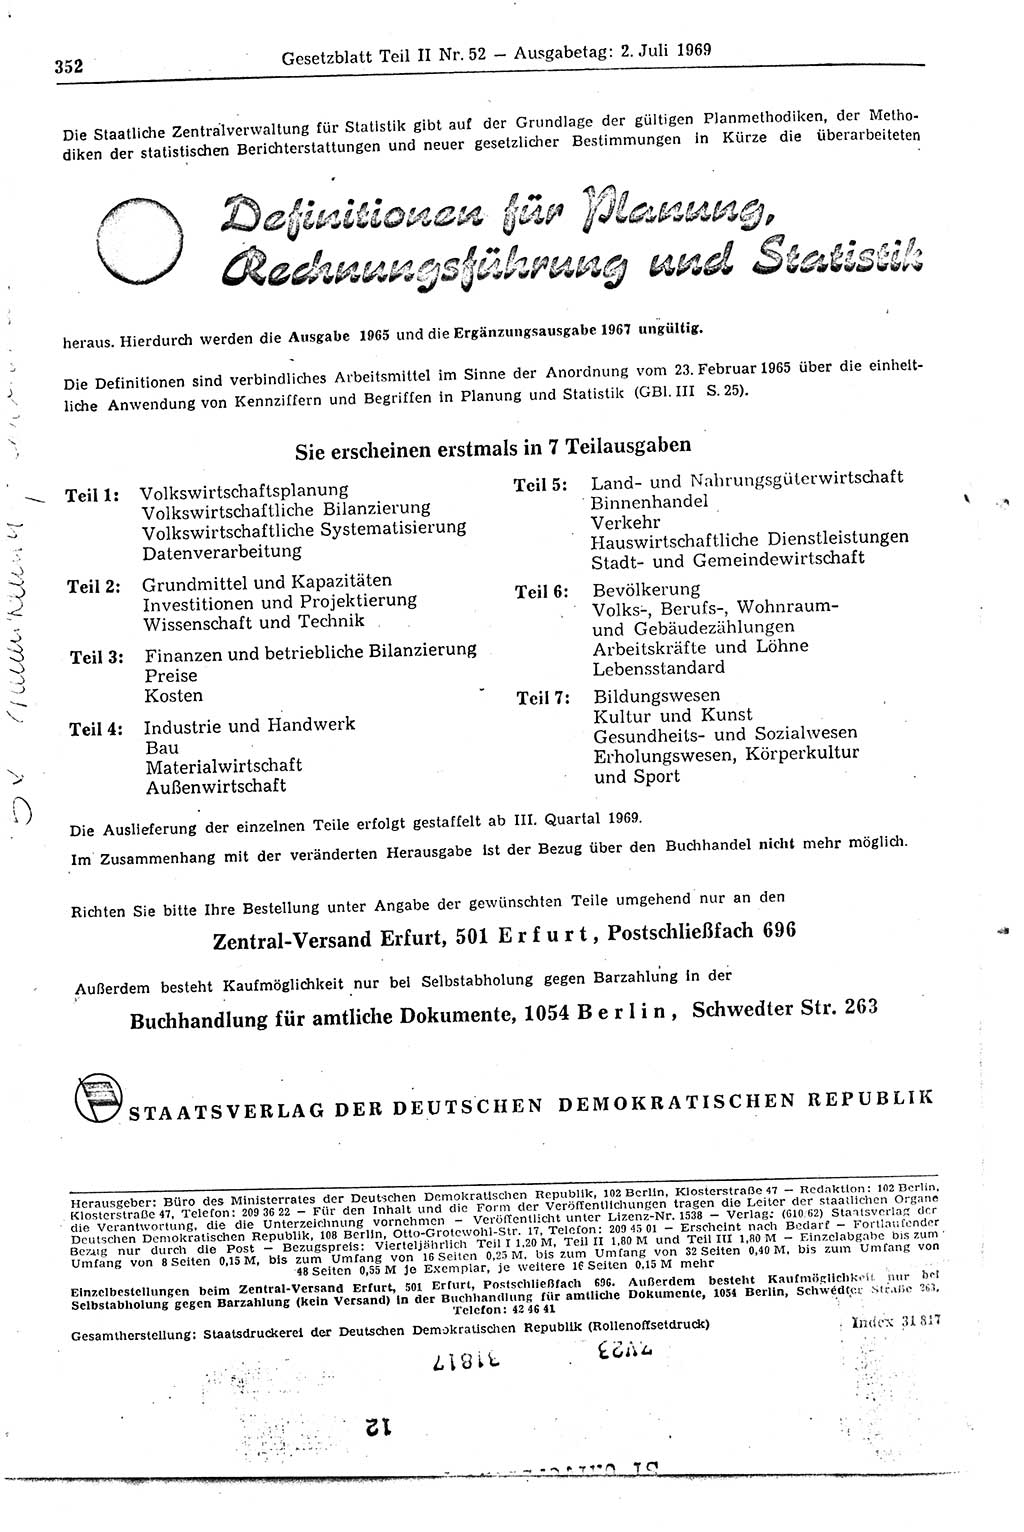 Gesetzblatt (GBl.) der Deutschen Demokratischen Republik (DDR) Teil ⅠⅠ 1969, Seite 352 (GBl. DDR ⅠⅠ 1969, S. 352)